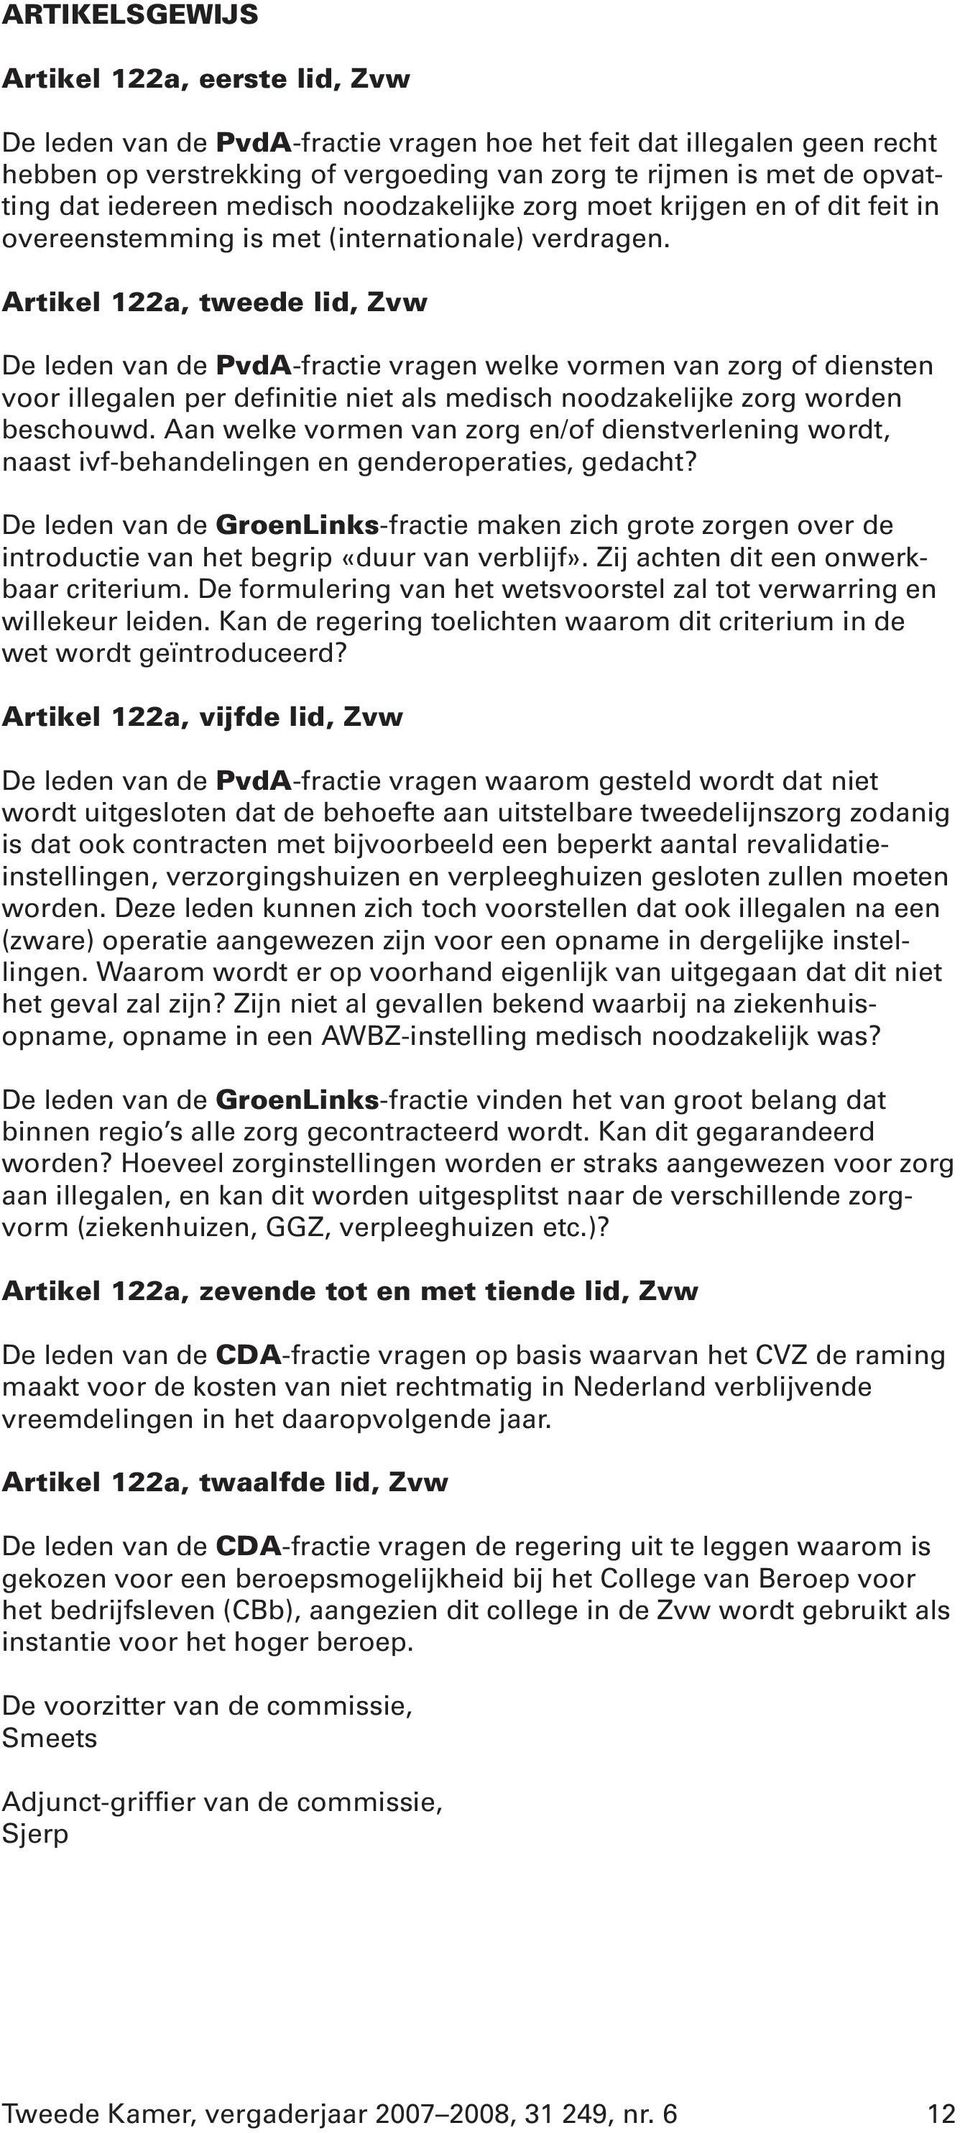 Artikel 122a, tweede lid, Zvw De leden van de PvdA-fractie vragen welke vormen van zorg of diensten voor illegalen per definitie niet als medisch noodzakelijke zorg worden beschouwd.